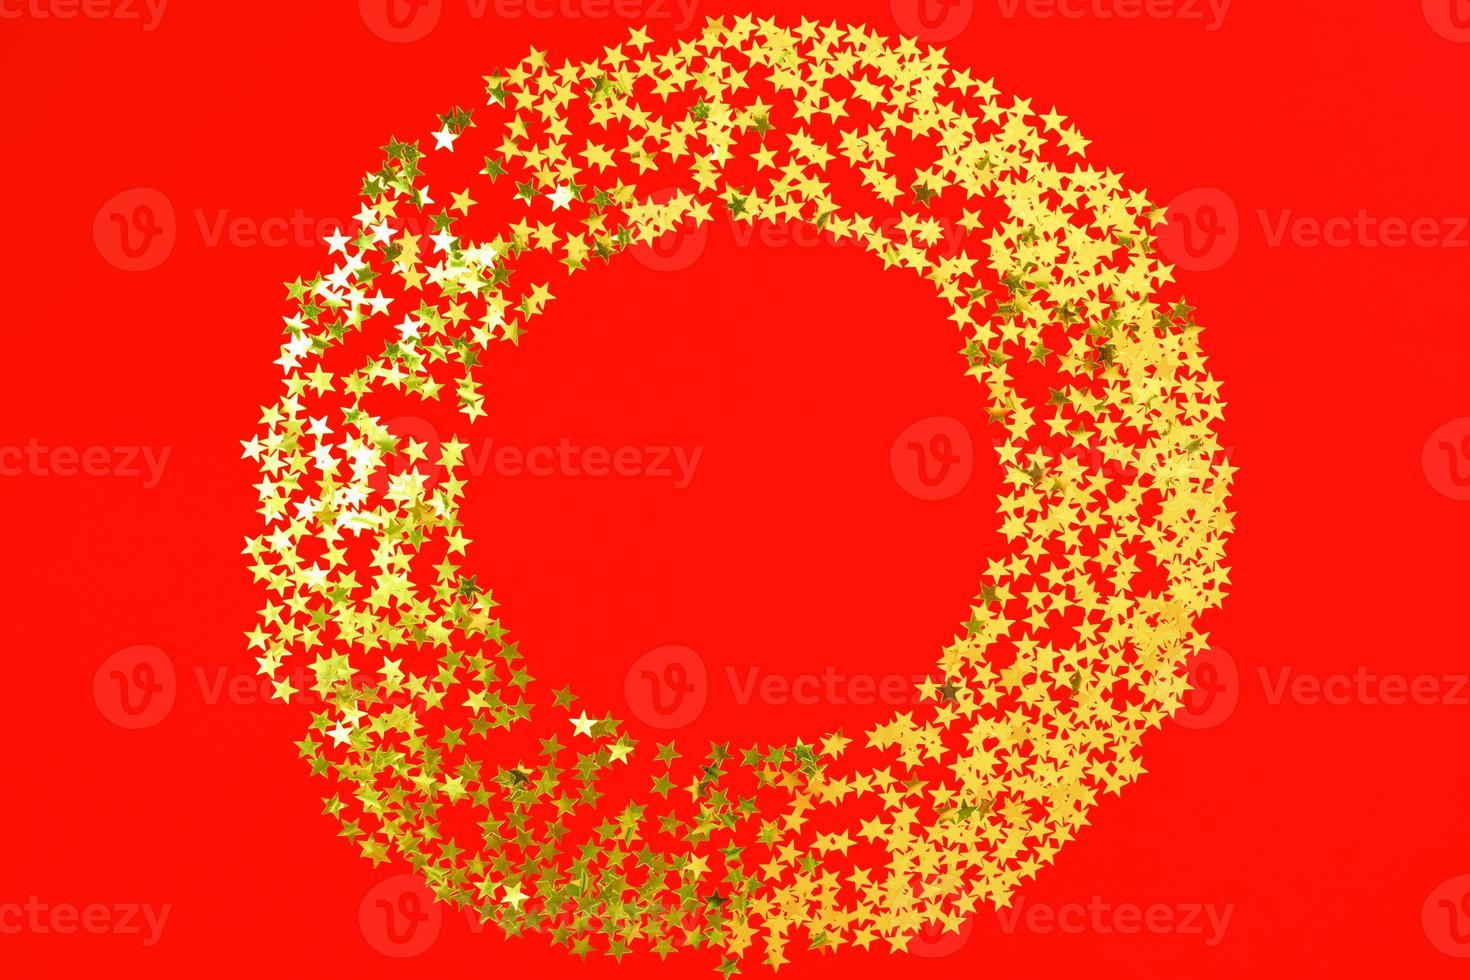 telón de fondo rojo con brillo y confeti de estrellas doradas en círculo. fondo brillante de vacaciones festivas foto